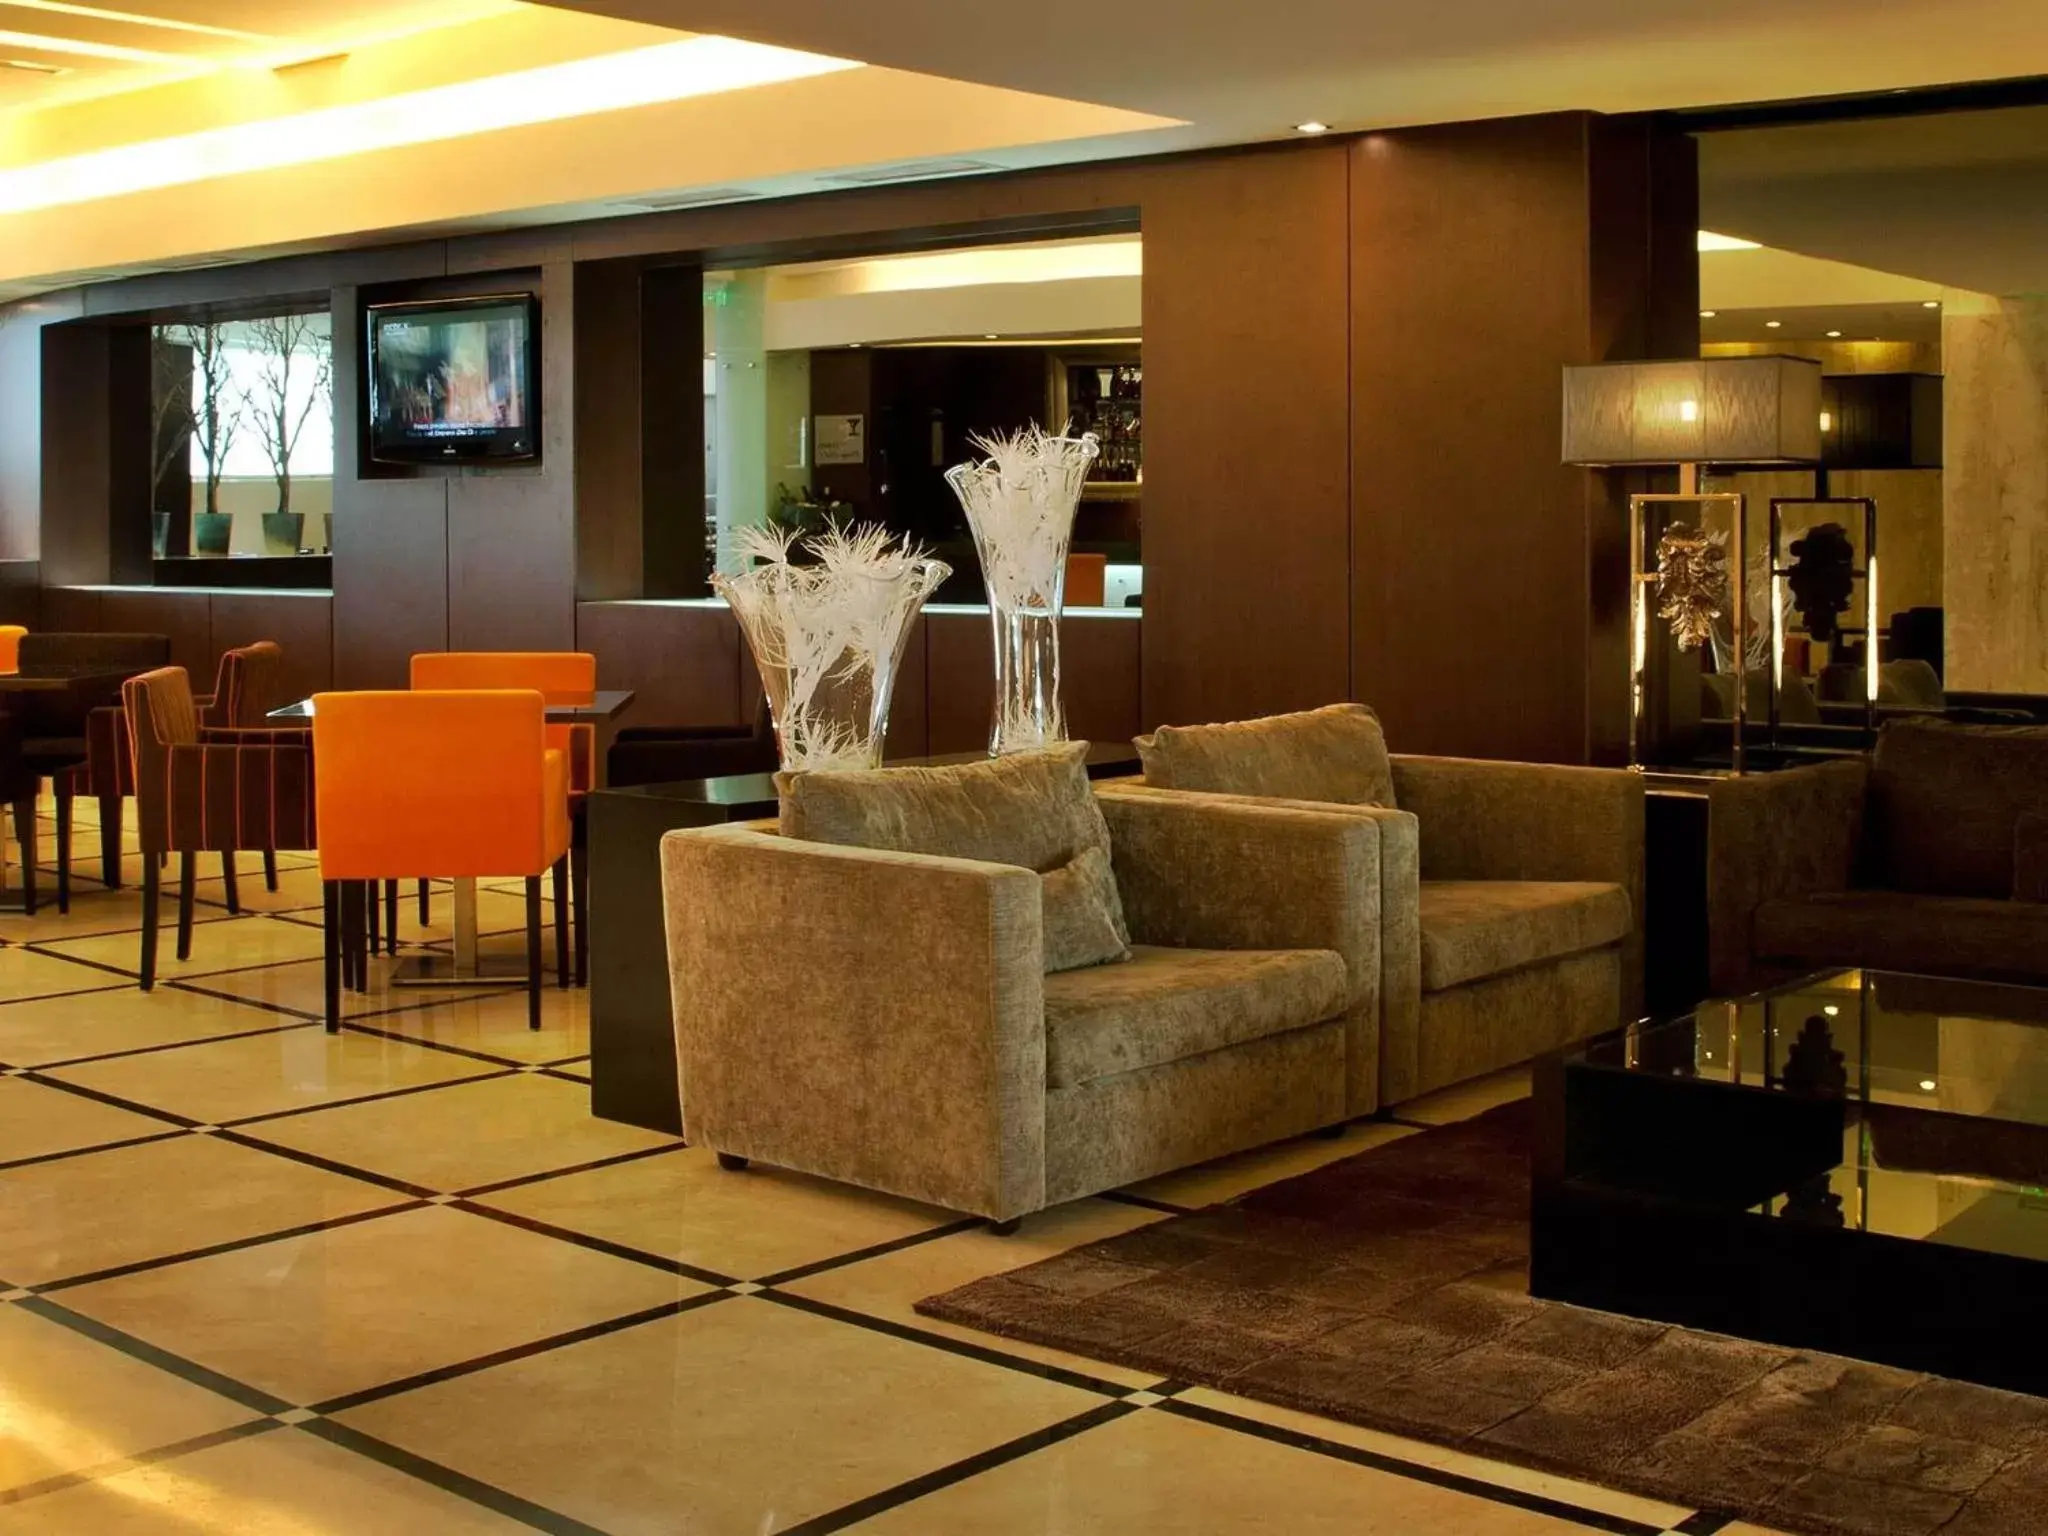 Lobby or reception in TURIM Alameda Hotel